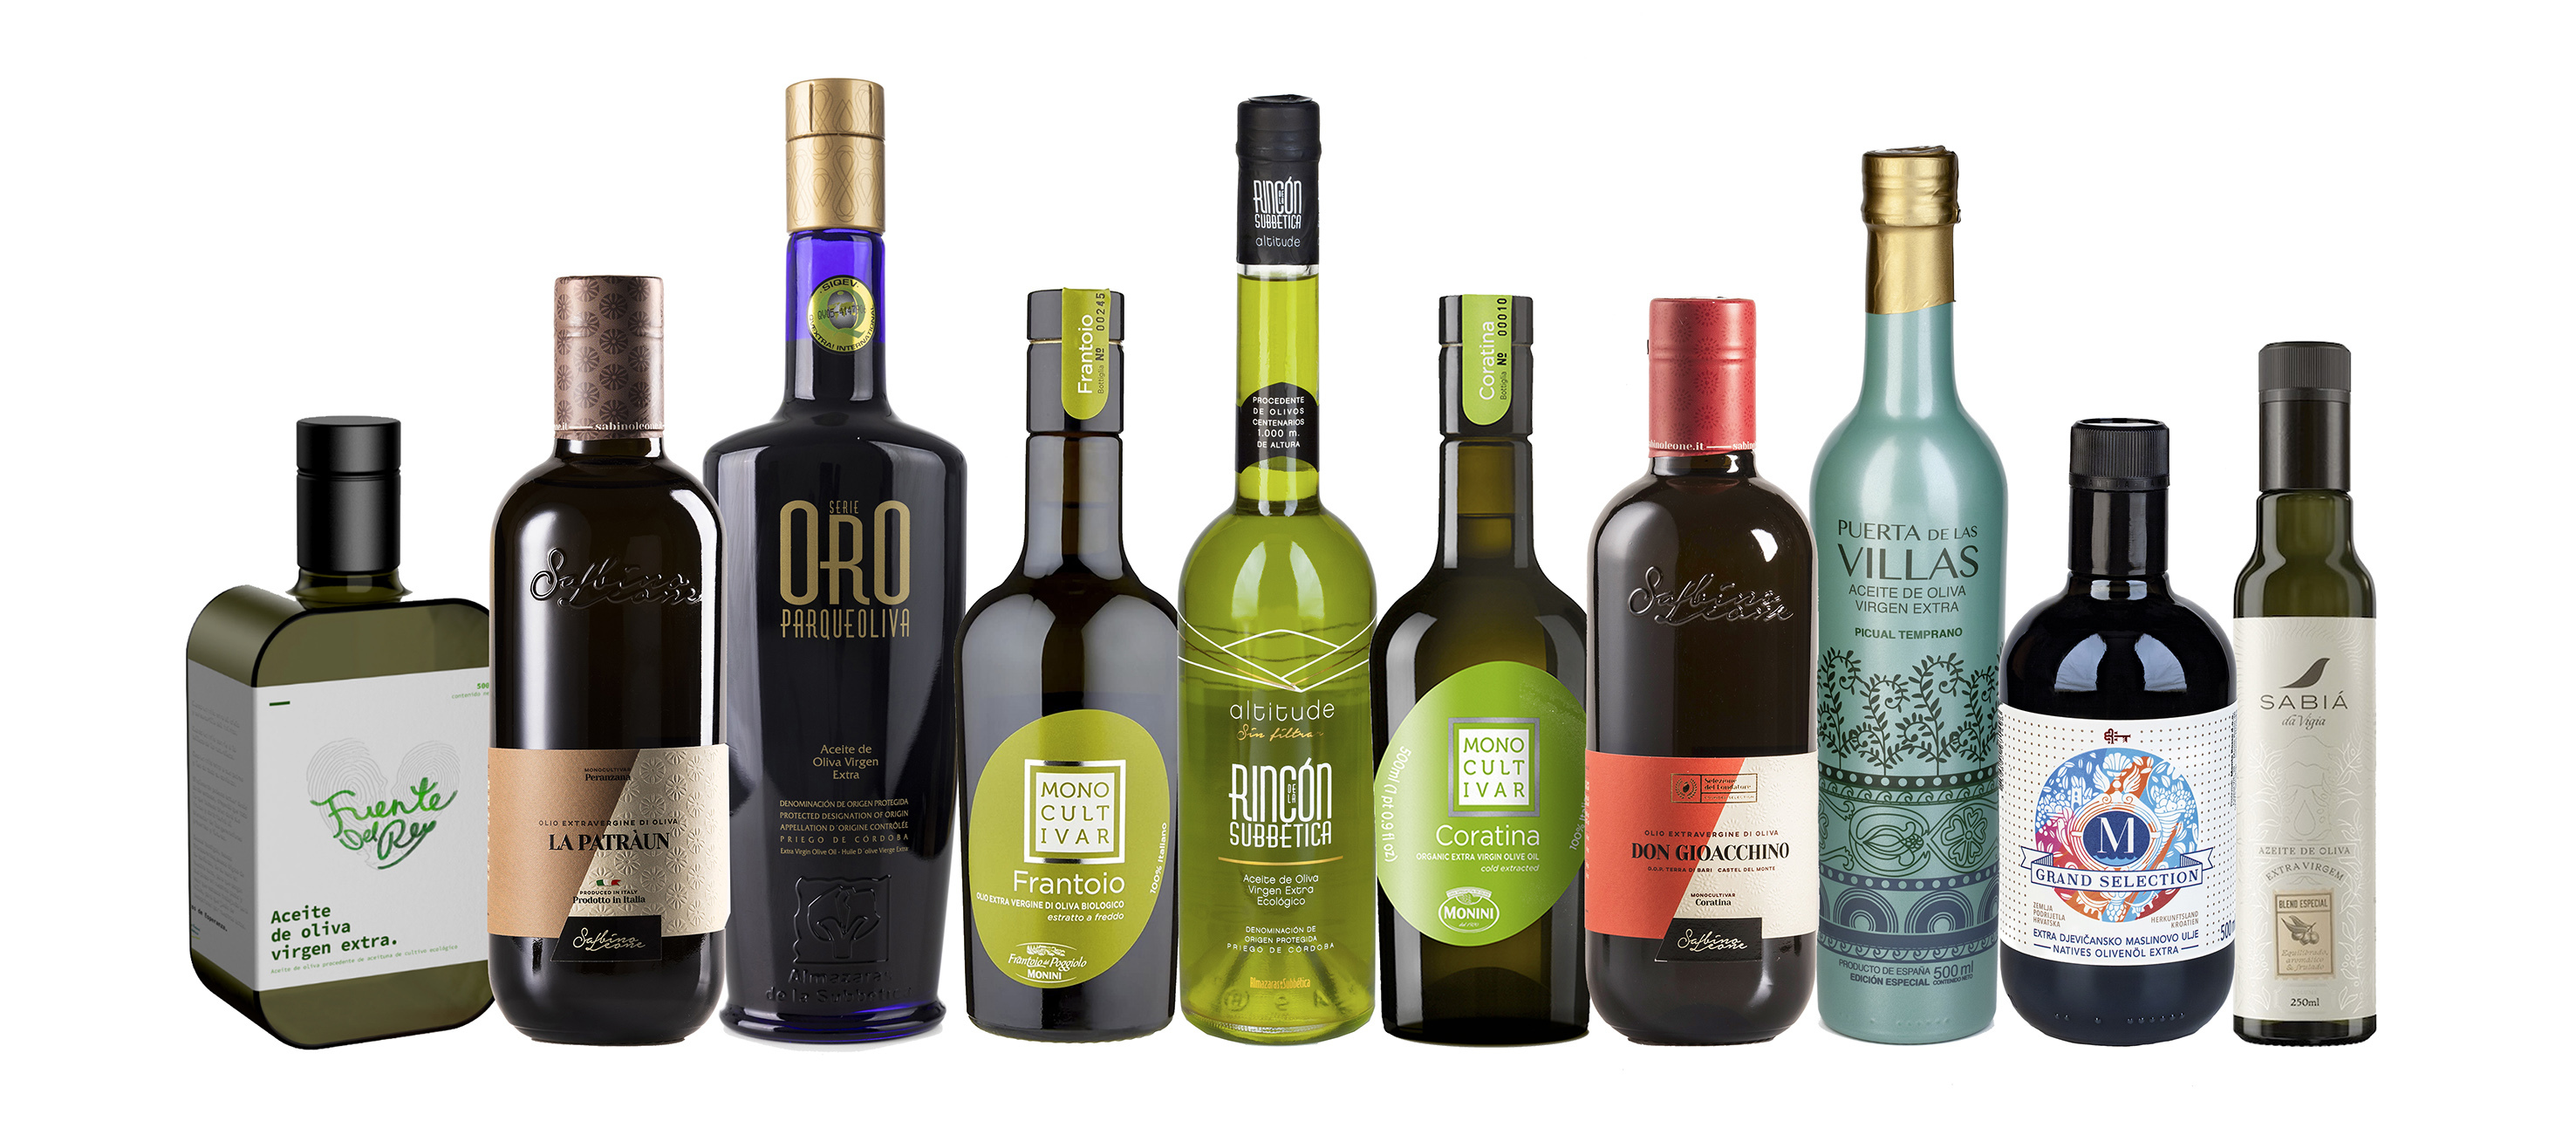 Cuatro aceites de oliva virgen españoles entre los diez mejores del mundo (incluido el número uno)